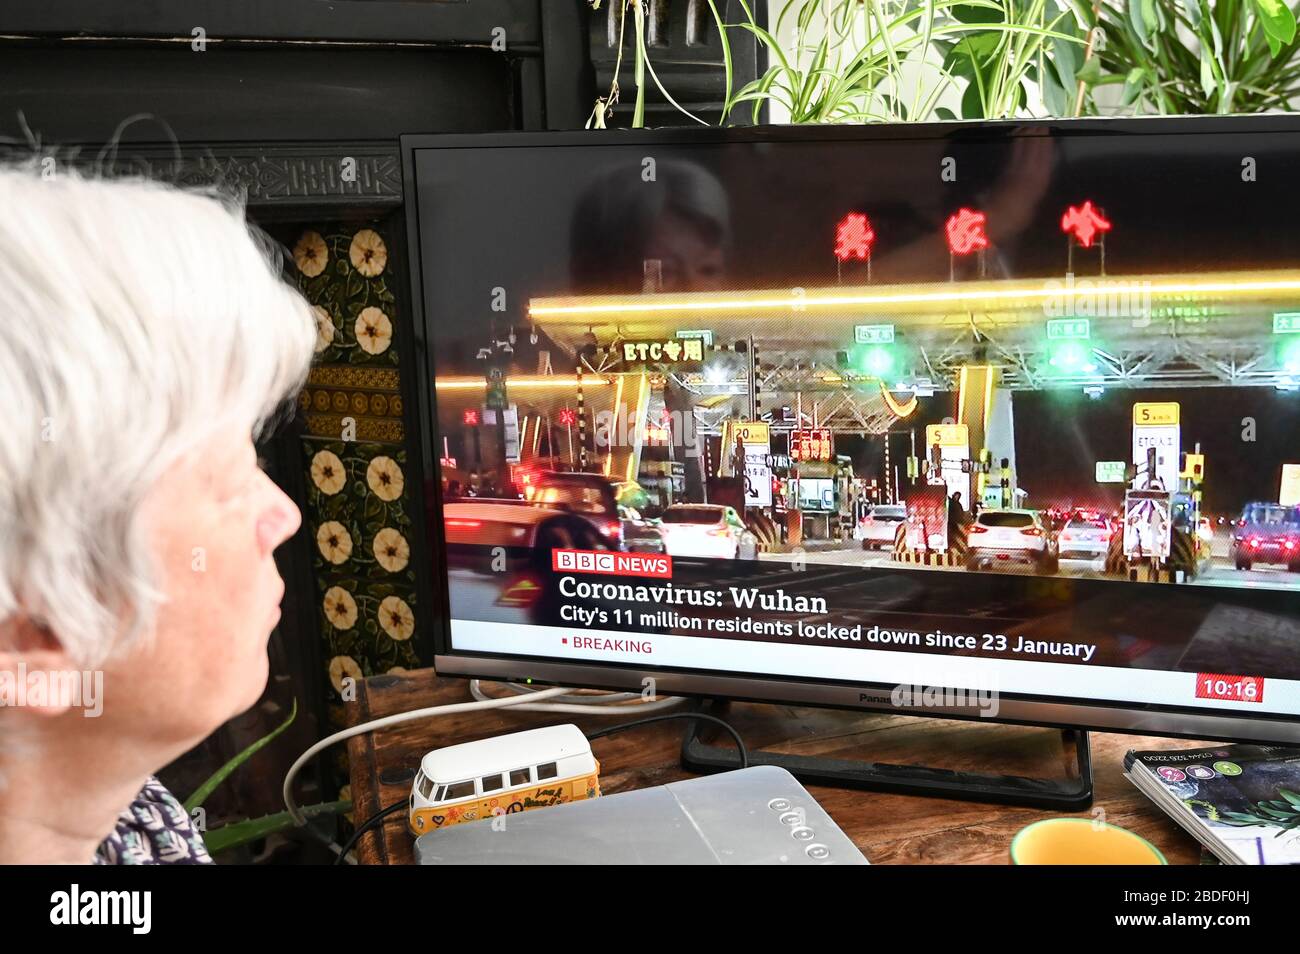 Une femme regardant les nouvelles de la BBC avec des développements à Wuhan, Chine concernant Covid-19 et le verrouillage. Banque D'Images